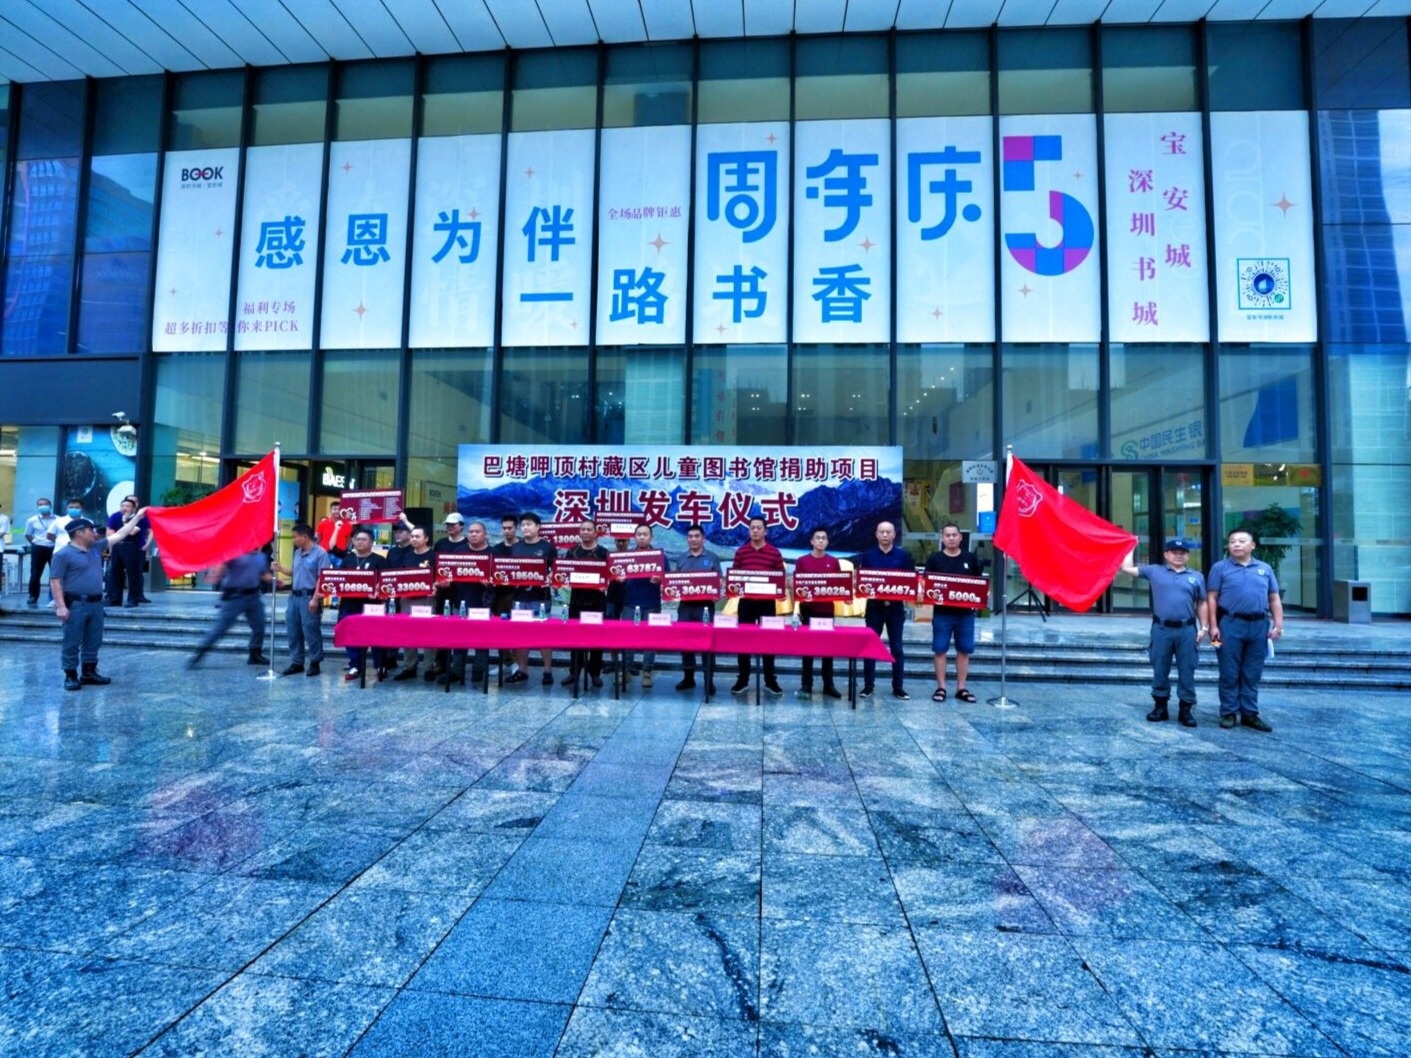 四川巴塘县藏区儿童图书馆捐助项目启动仪式在深举行